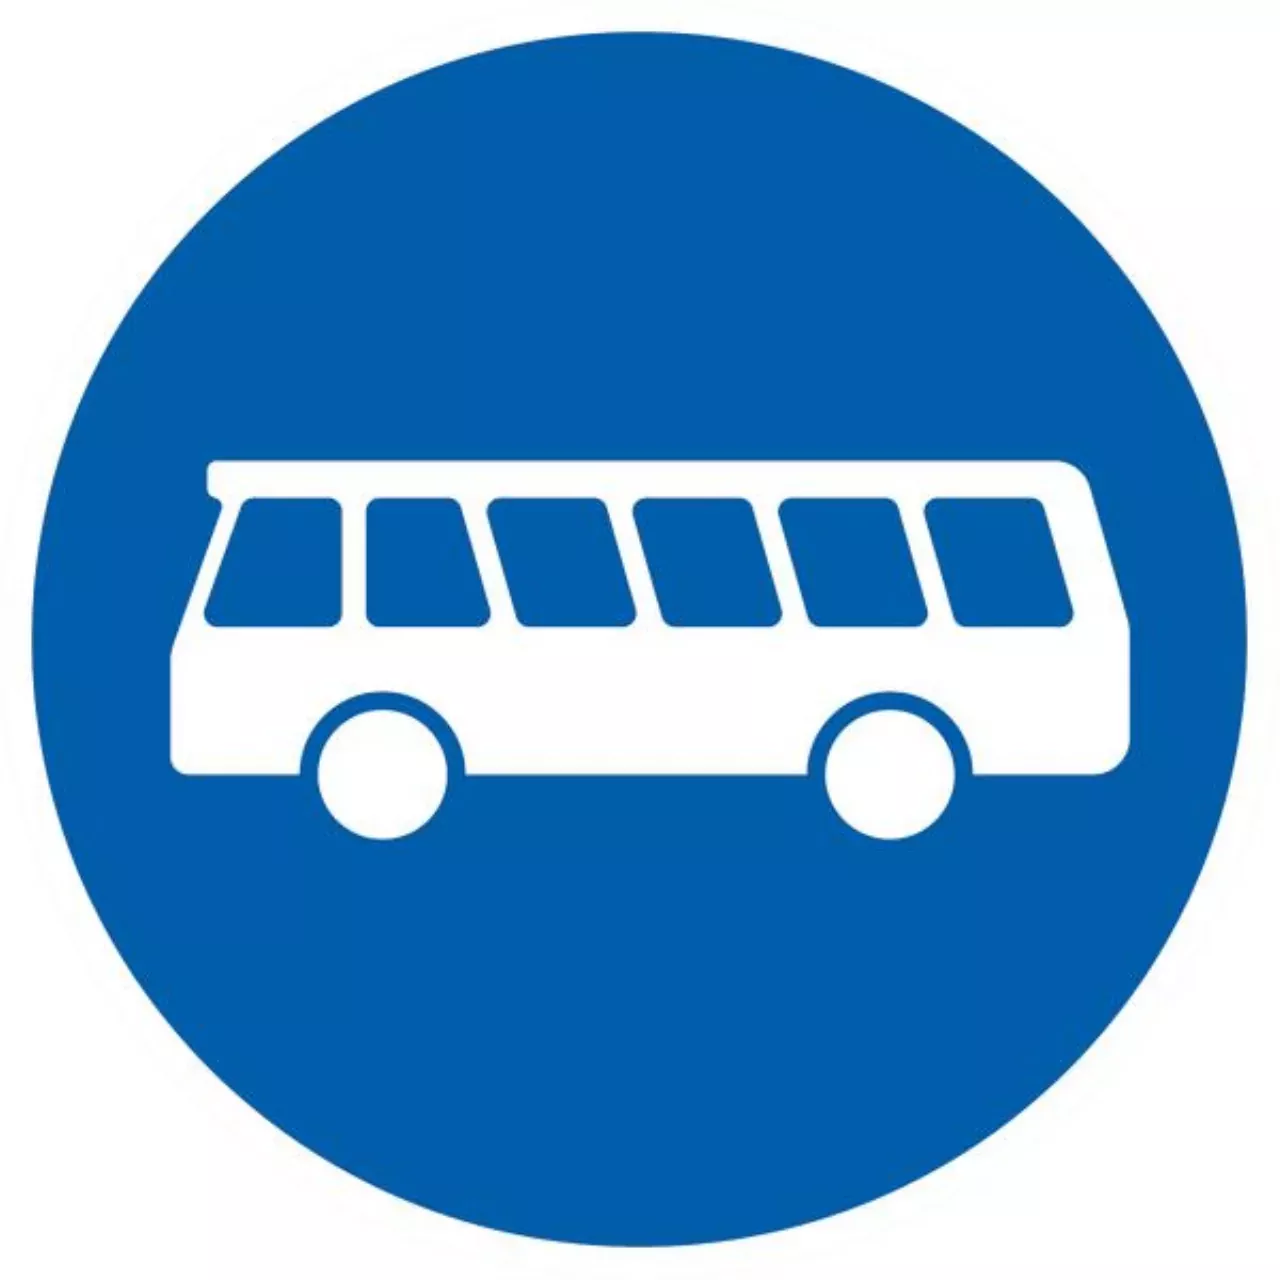 Vorschriftzeichen 200?299 VZ245 Bussonderfahrstreifen - RD 420 2 mm RA1 Bild 2 von 4 für Verkehrszeichen